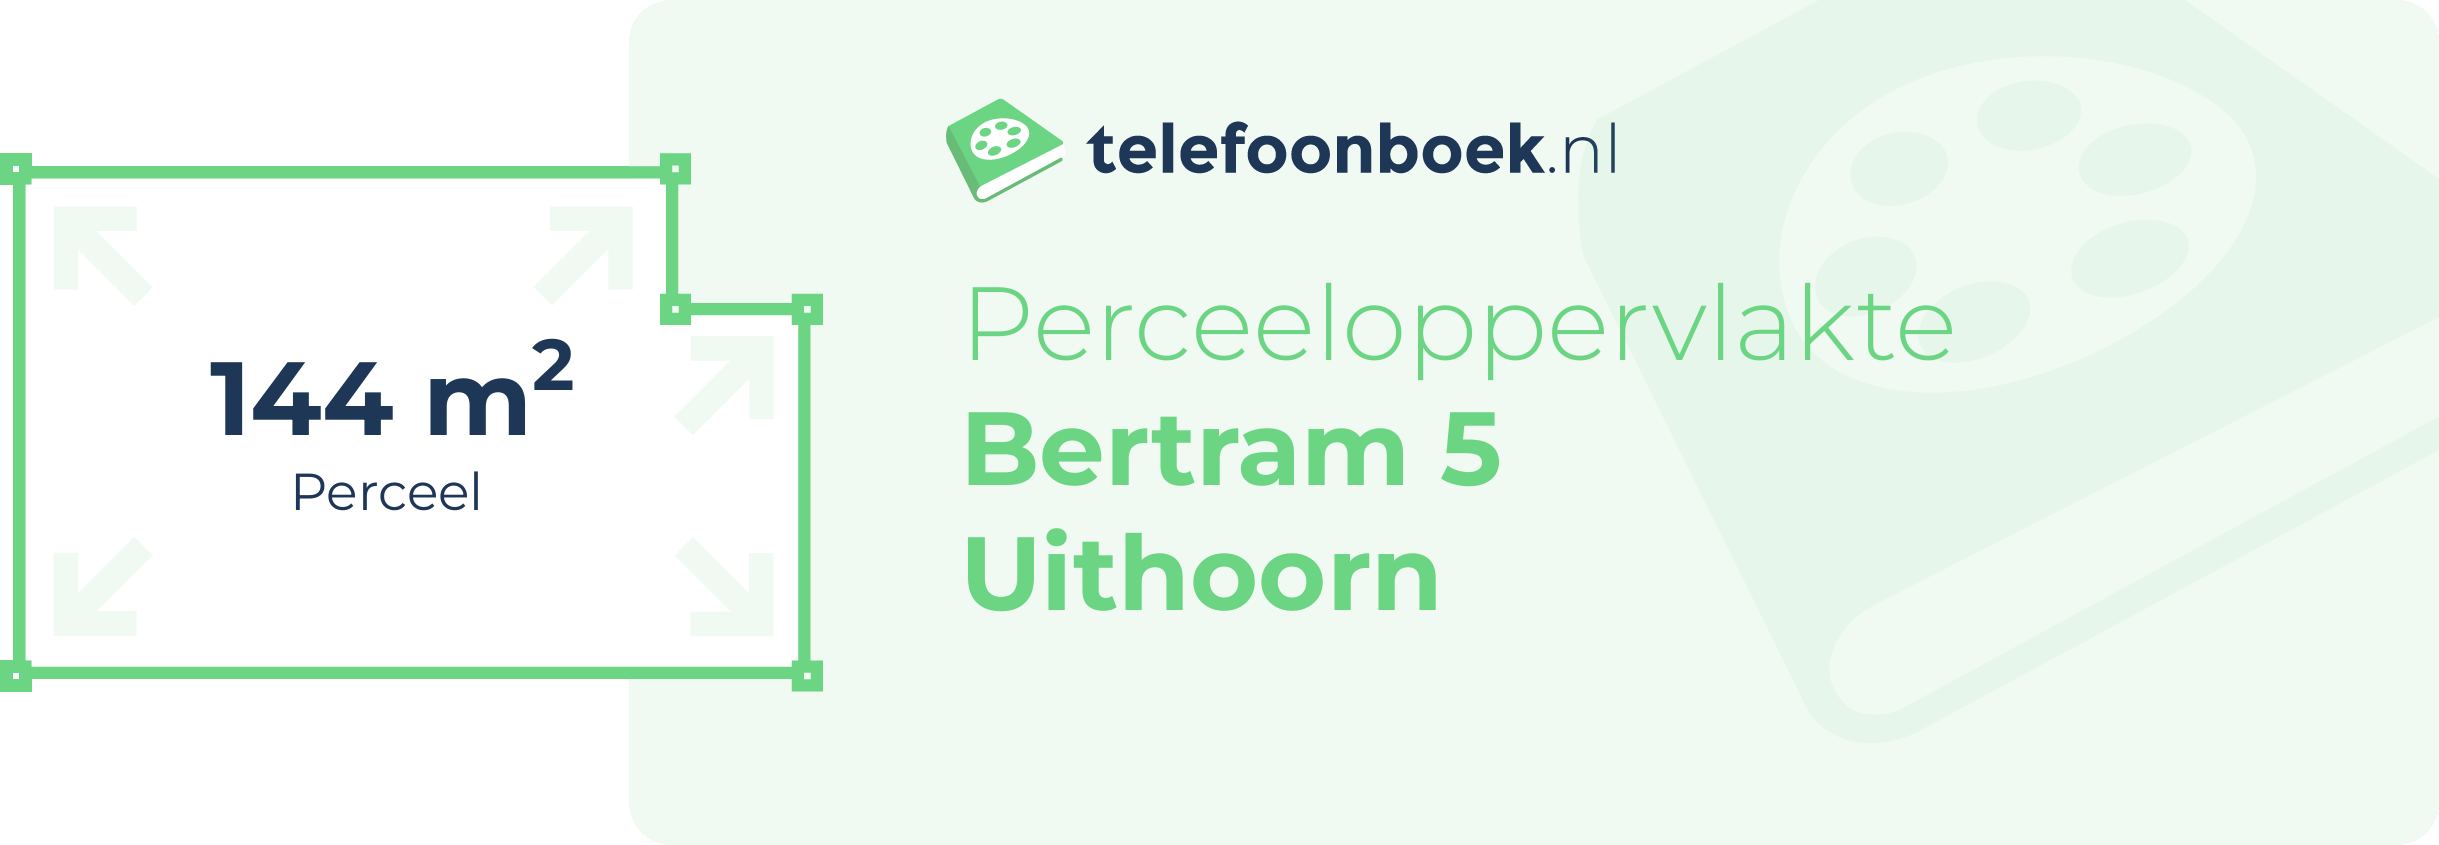 Perceeloppervlakte Bertram 5 Uithoorn